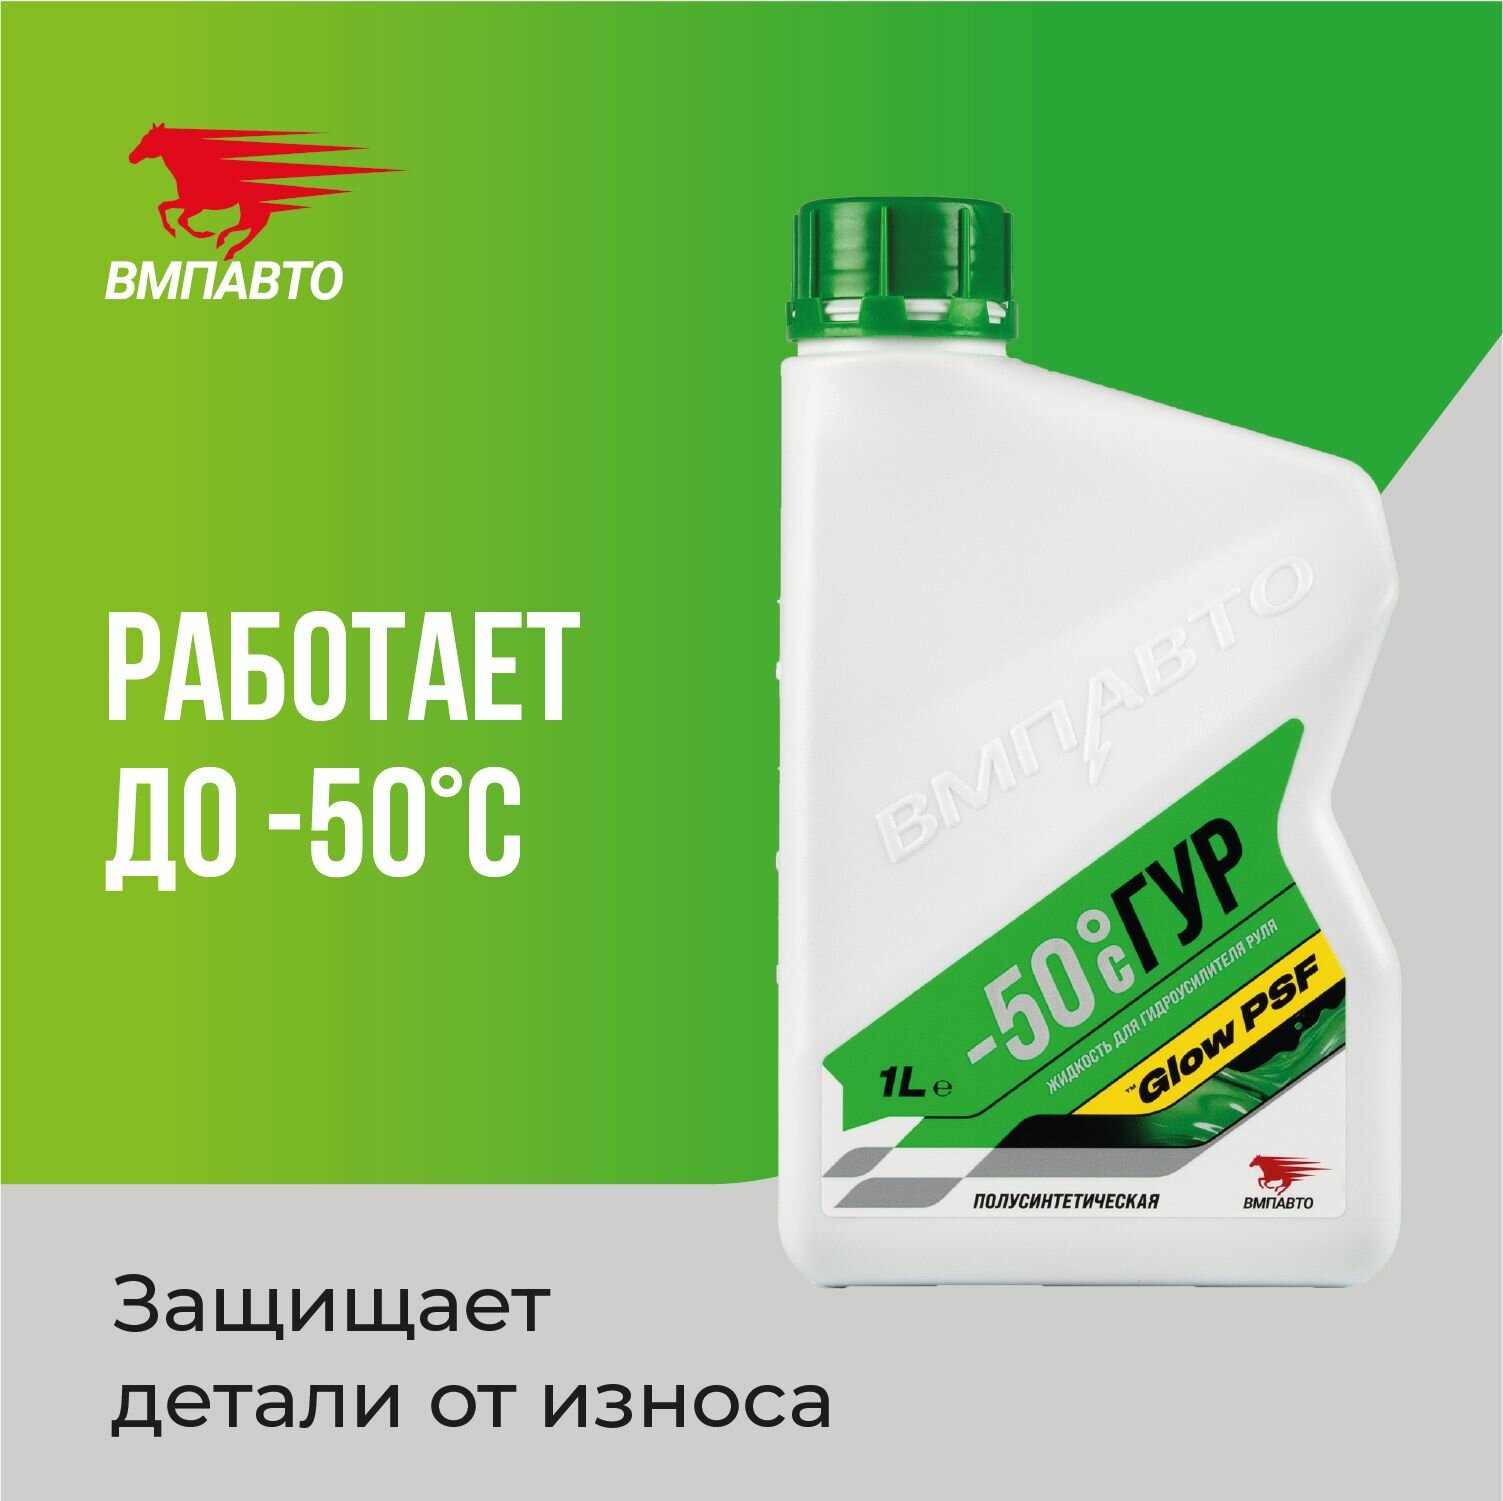 Жидкость (масло) для гидроусилителя руля (ГУР) валера -50C, 1 л, ВМПАВТО